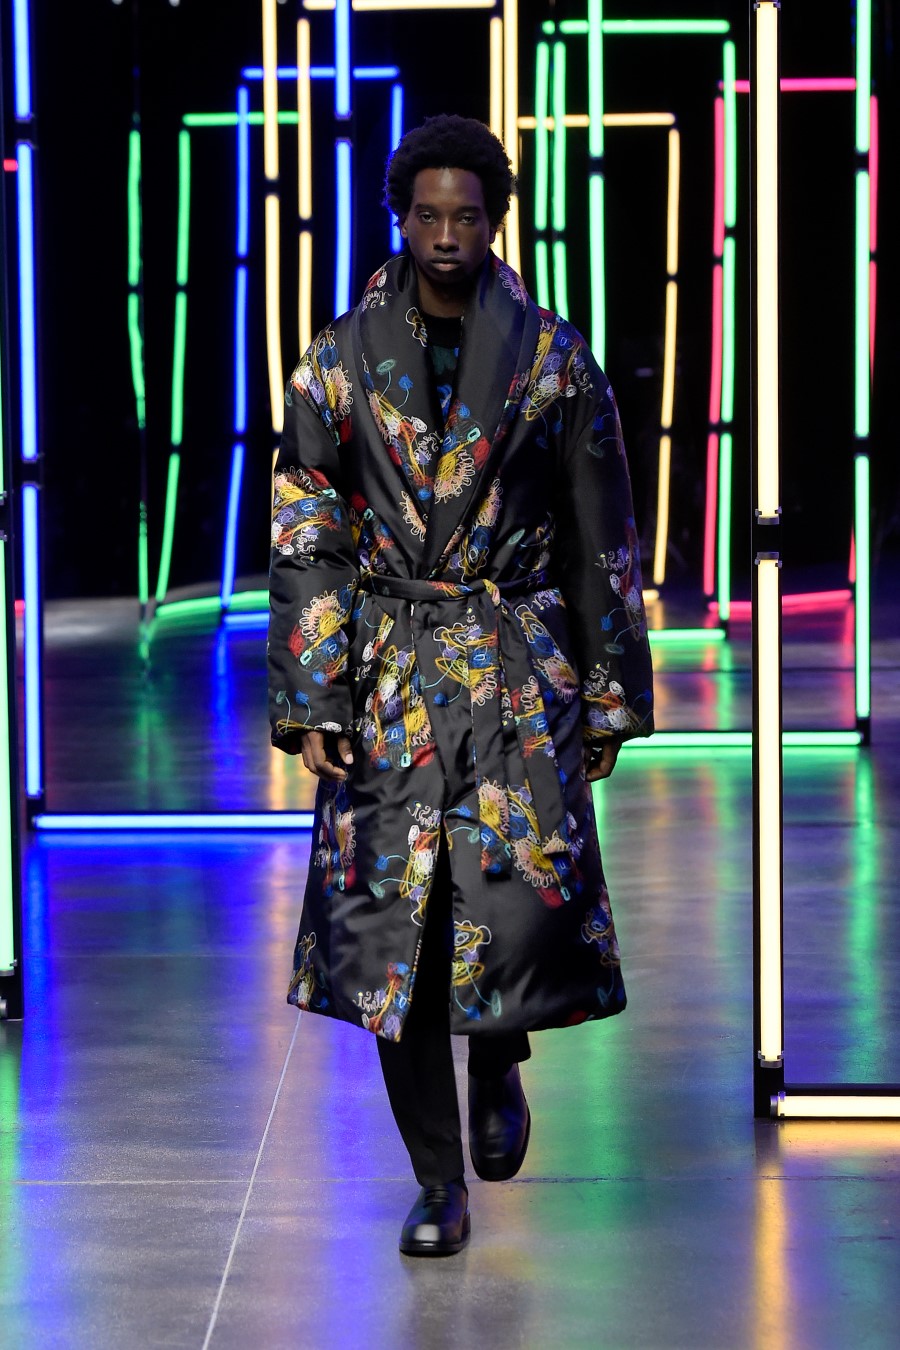 Fendi Fall Winter 2021 – Milan Fashion Week Men’s